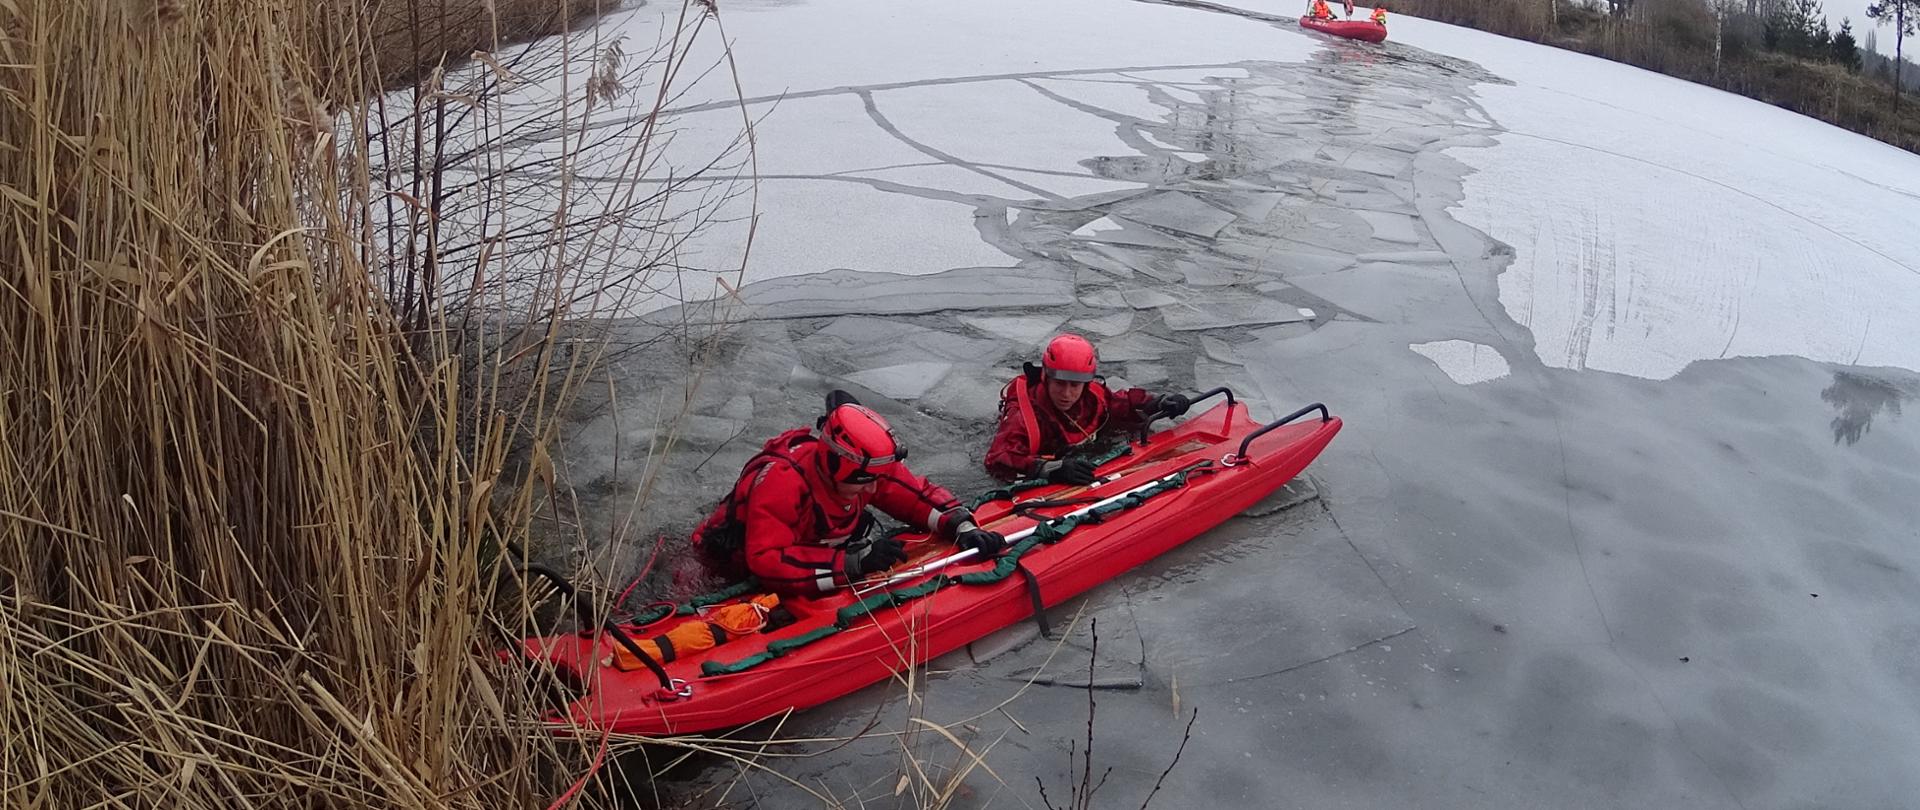 Zdjęcie przedstawia ćwiczenia doskonalenia zawodowego na zbiorniku wodnym. Na zdjęciu widać ratowników przygotowujących się do ćwiczeń z zakresu wodno- lodowych. Zdjęcie wykonane w porze dziennej na zbiorniku wodnym.